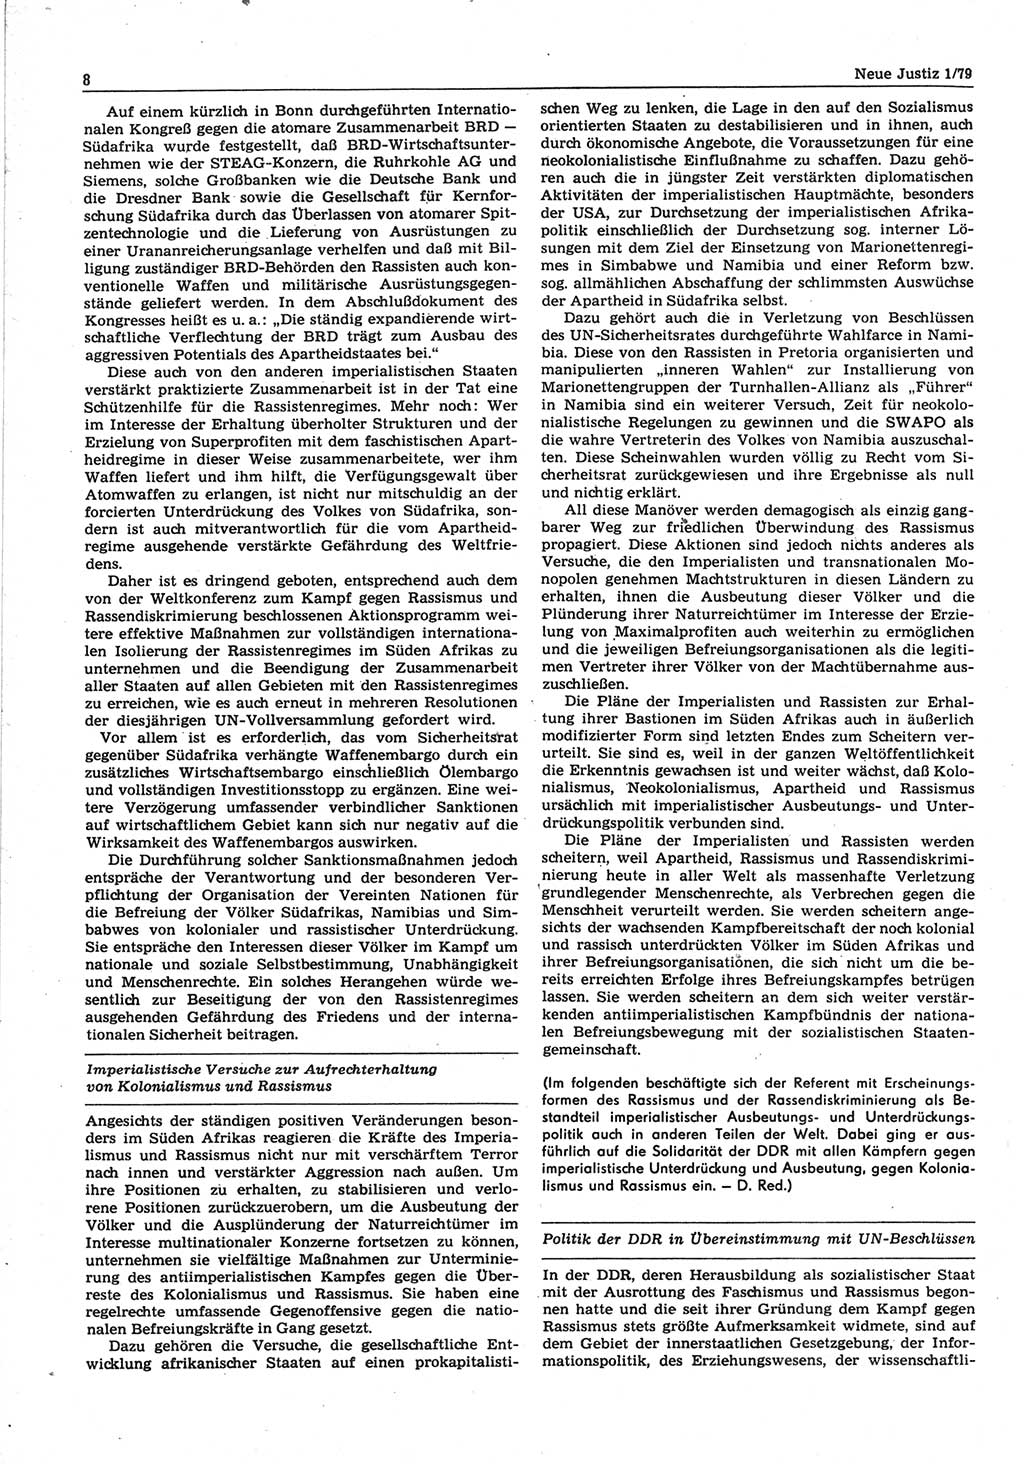 Neue Justiz (NJ), Zeitschrift für sozialistisches Recht und Gesetzlichkeit [Deutsche Demokratische Republik (DDR)], 33. Jahrgang 1979, Seite 8 (NJ DDR 1979, S. 8)